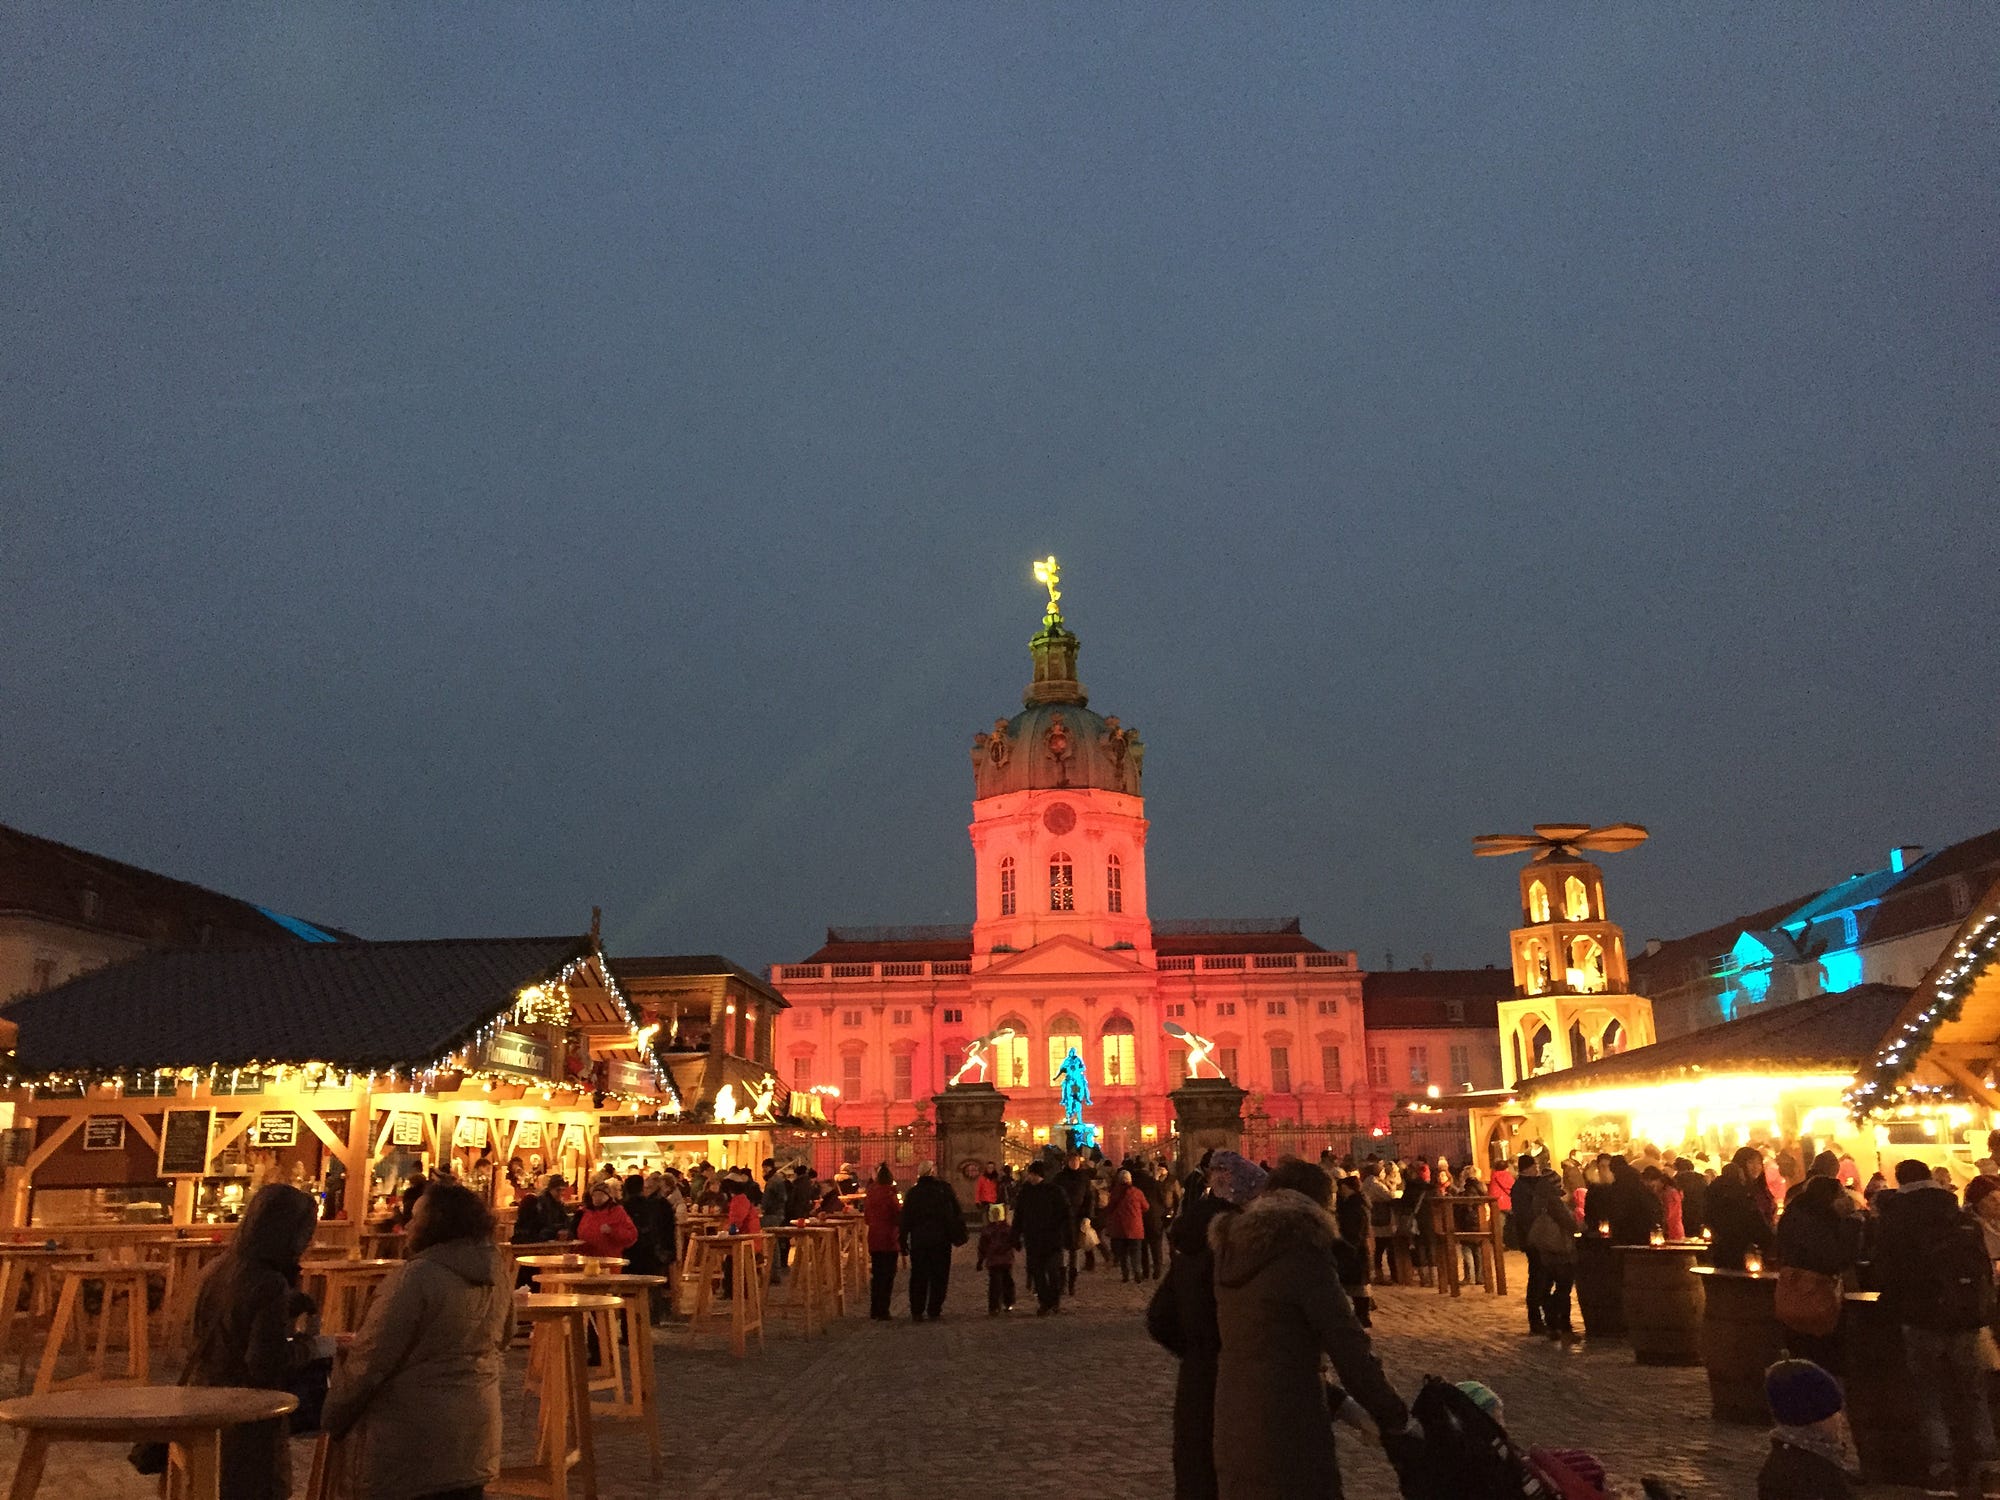 Charlottenburg Palace christmas market